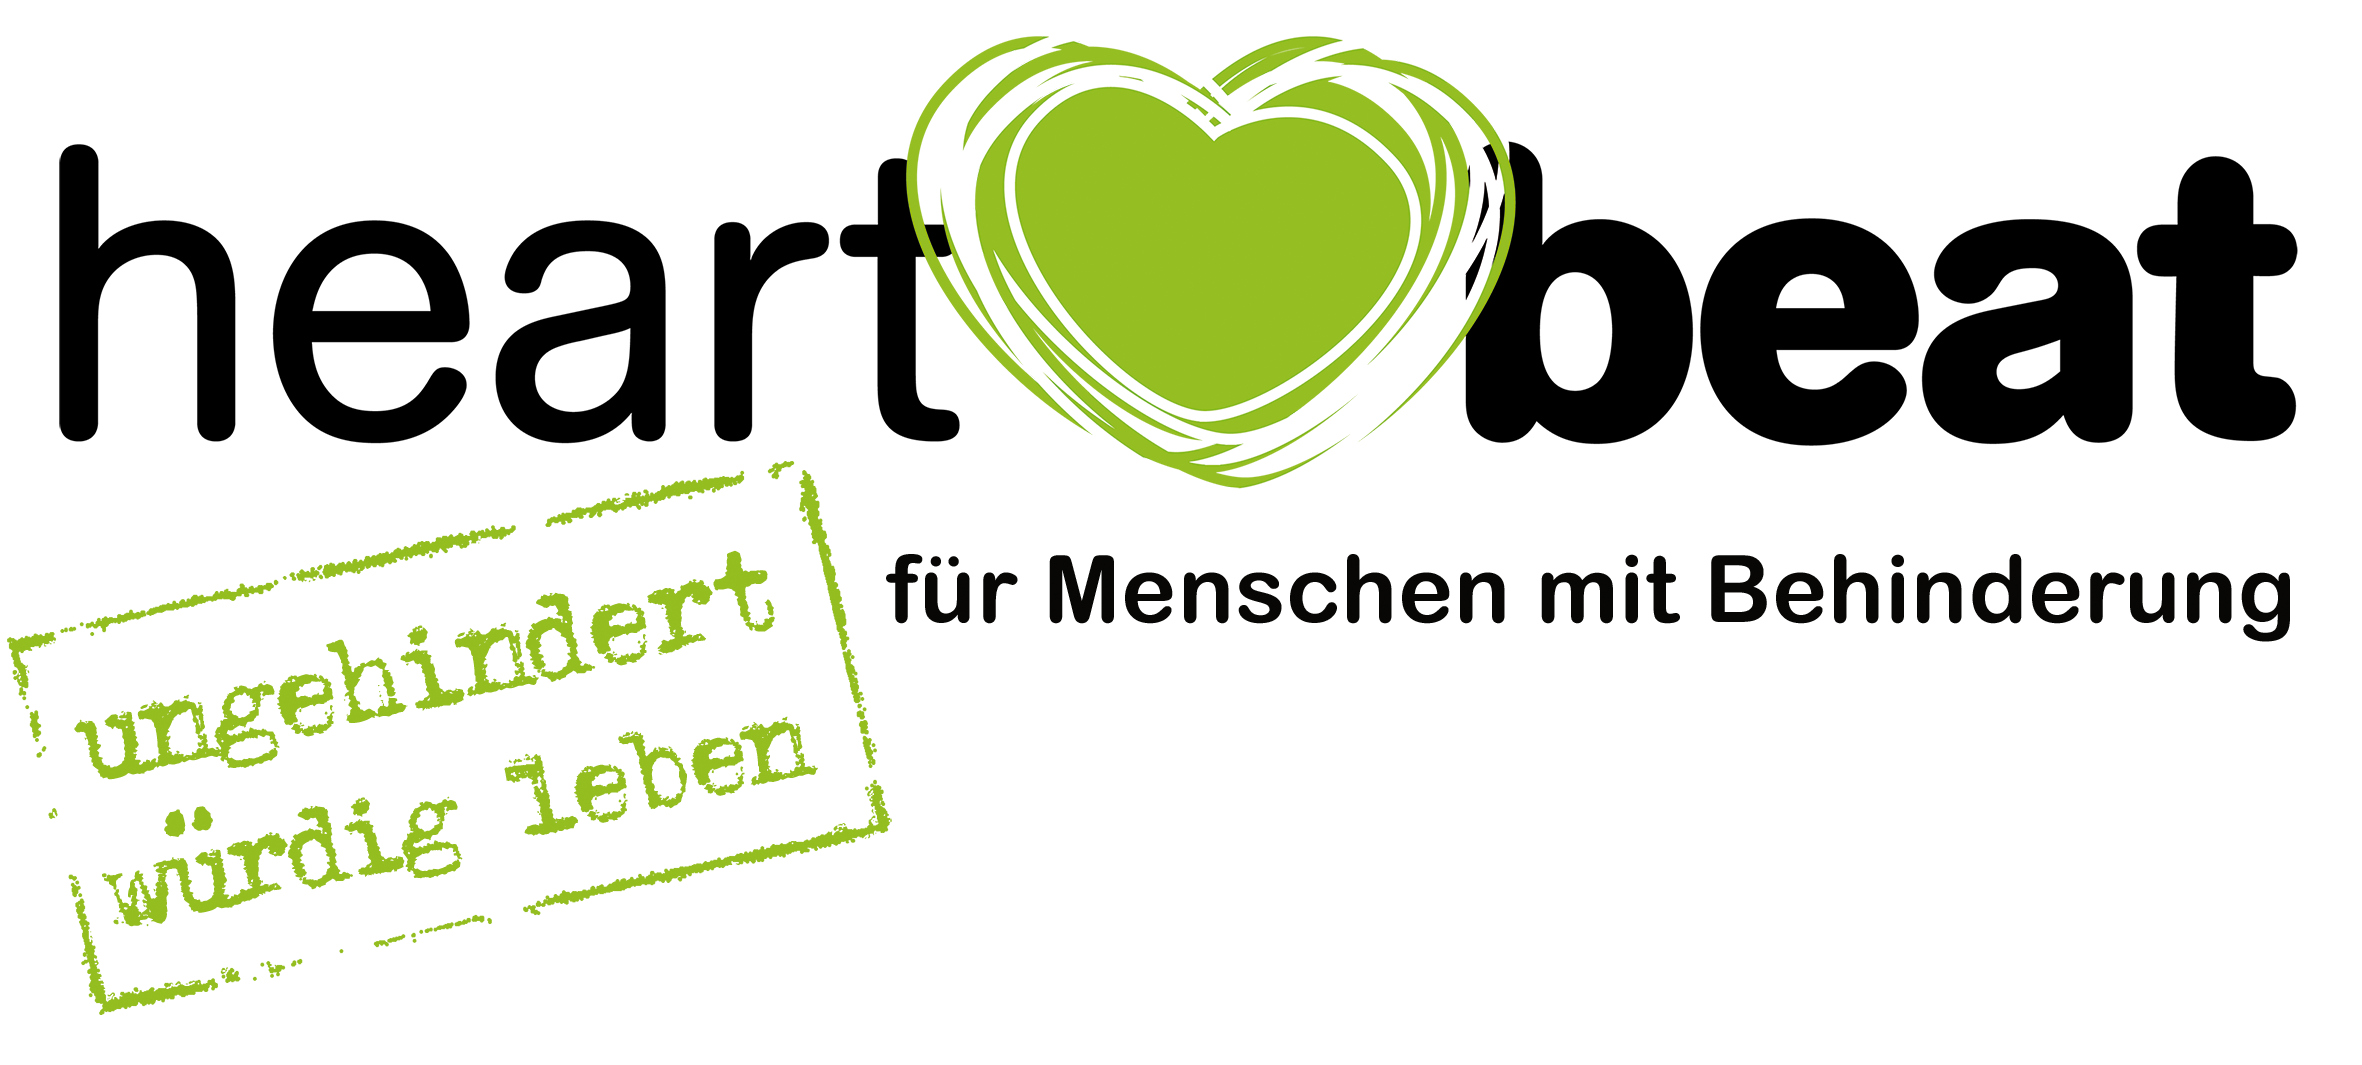 Das heartbeat-Logo: Schriftzug heartbeat mit einem grünen Herzen zwischen "heart" und "beat", darunter der Schriftzug "für Menschen mit Behinderung". links daneben ein grüner Stempel mit der Aufschrift "ungehindert würdig leben".